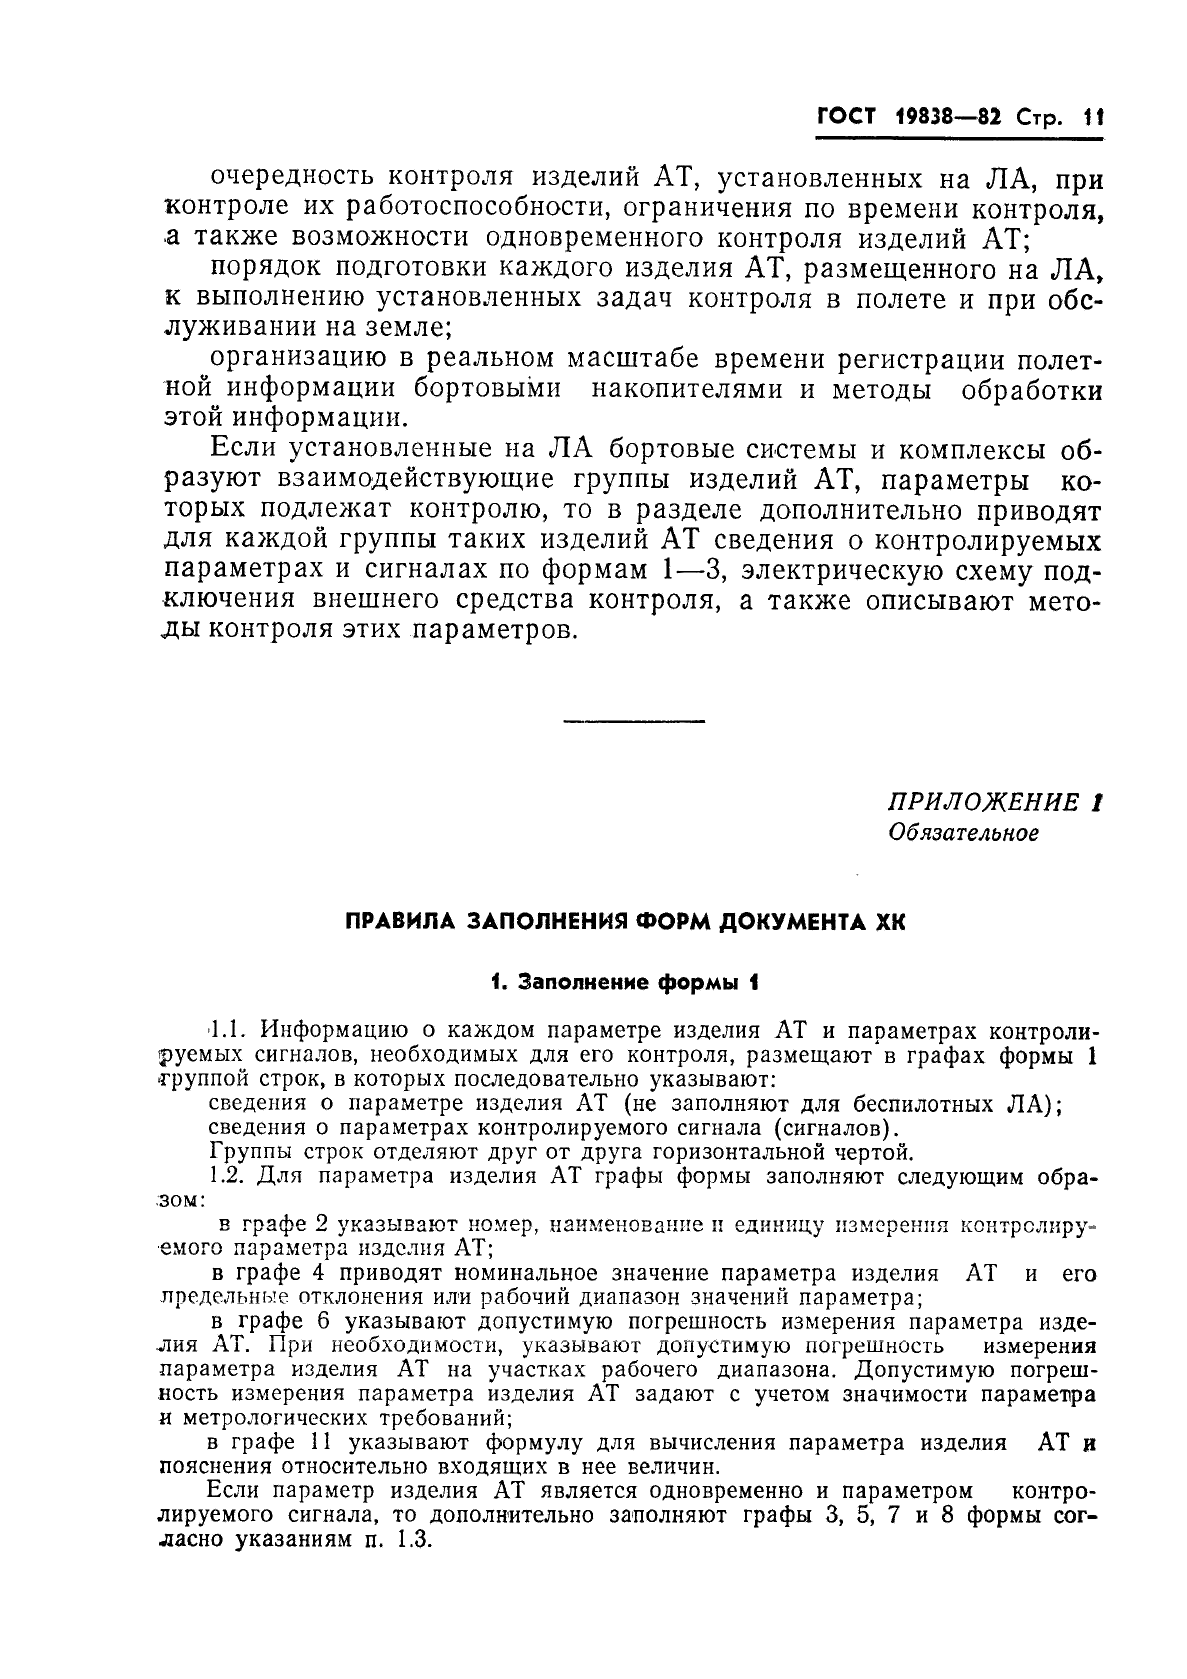 ГОСТ 19838-82 Характеристика контролепригодности изделий авиационной техники. Правила изложения и оформления (фото 12 из 21)